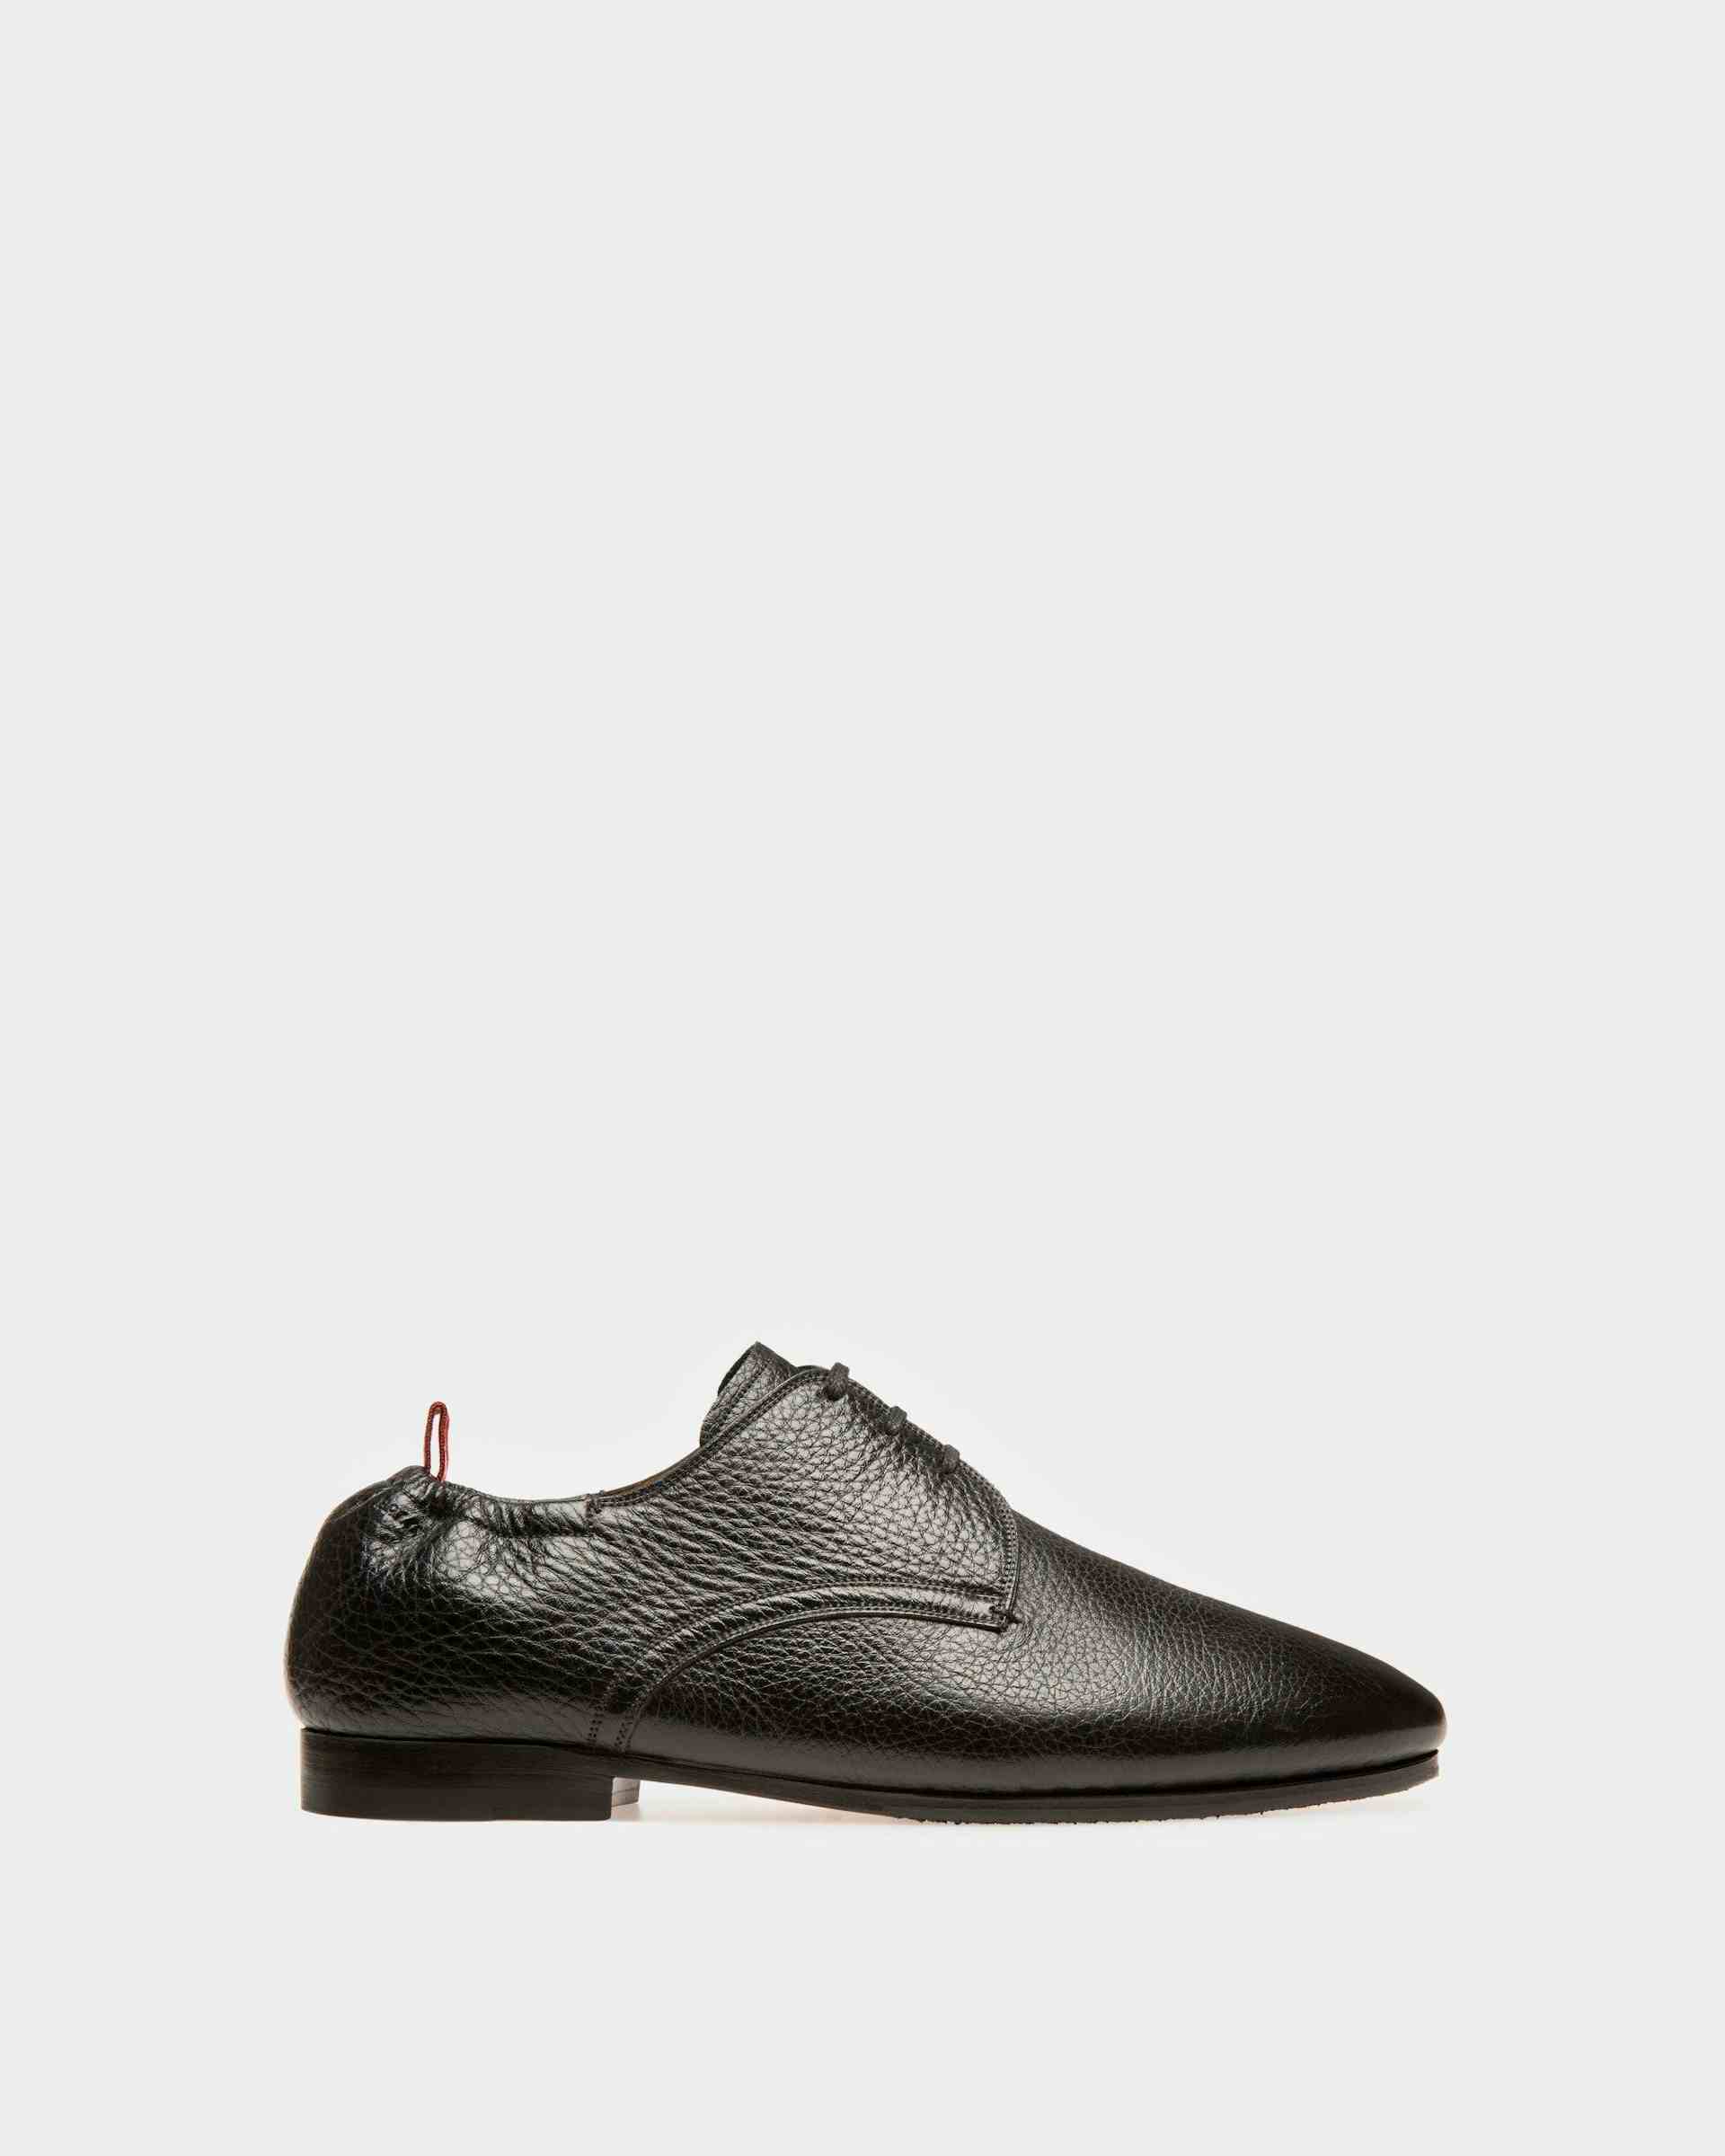 Plizard Leather Derby Shoes In Black - Men's - Bally